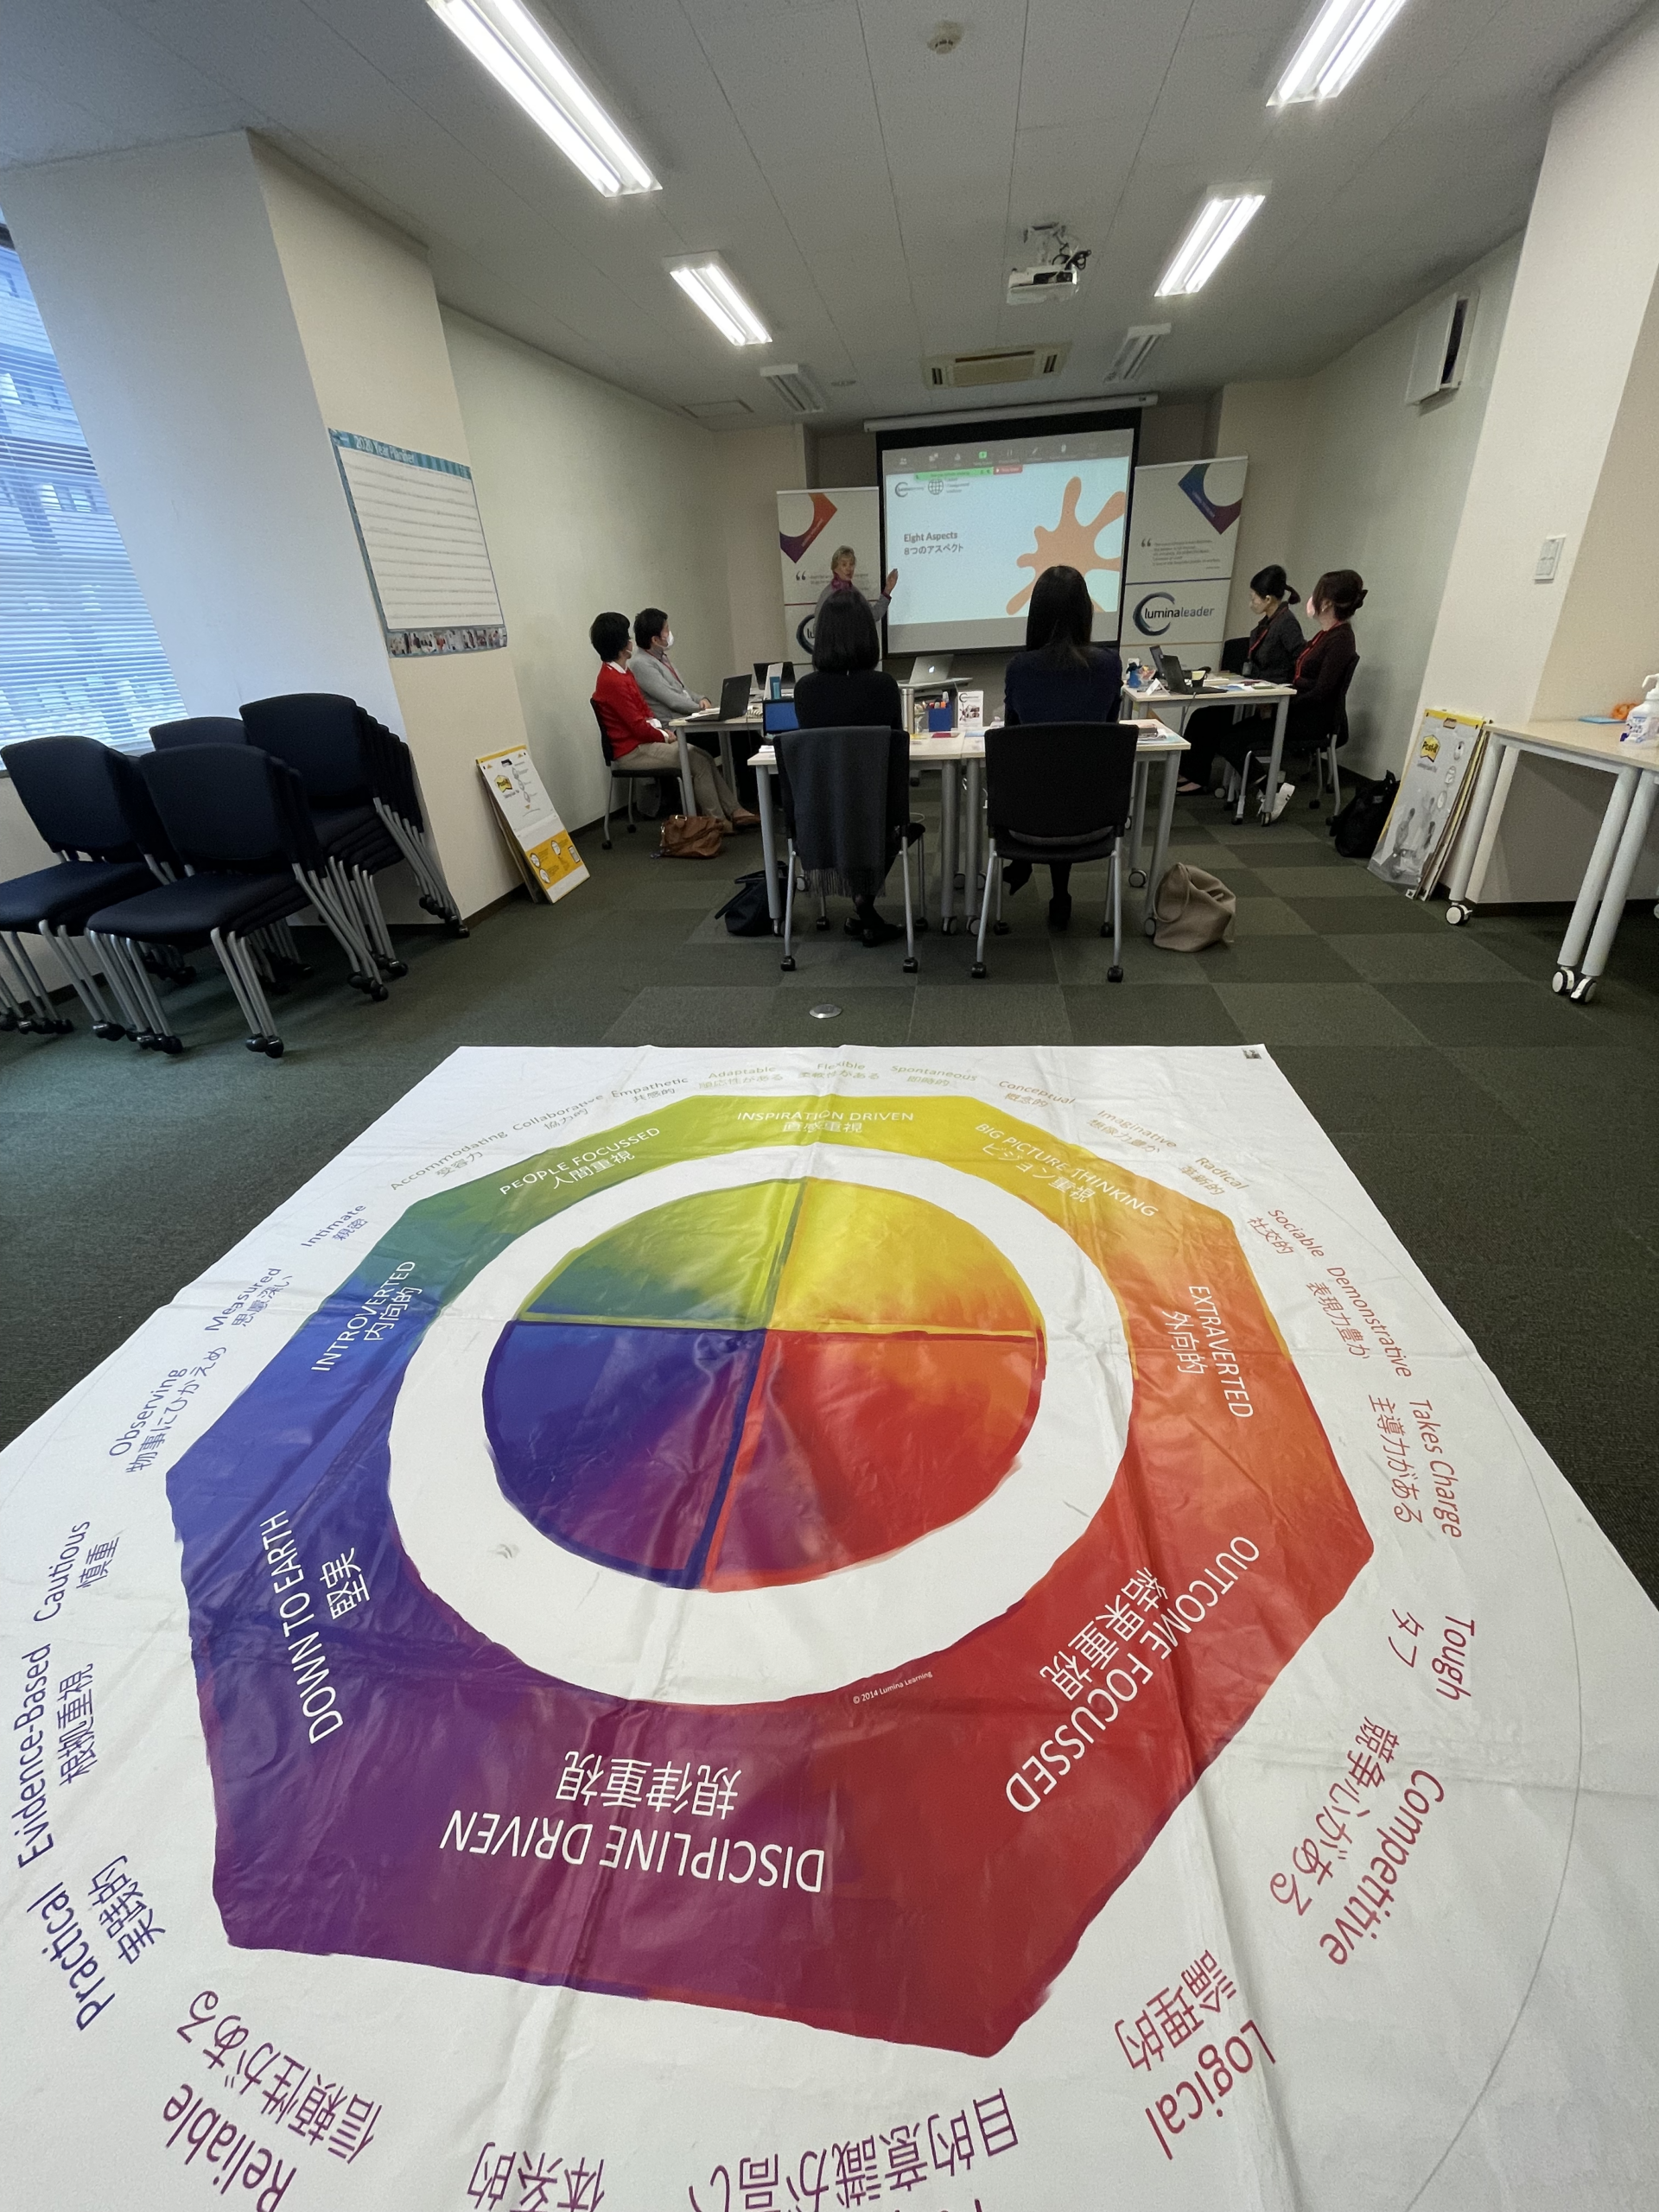 Nami Okazakiさんが参加された2023年度リーダーシップ研修グローバルマネージメントアカデミー(GMA)の対面での研修の様子。画面手前にはルミナラーニングジャパンのプログラムで使うマットが見える。